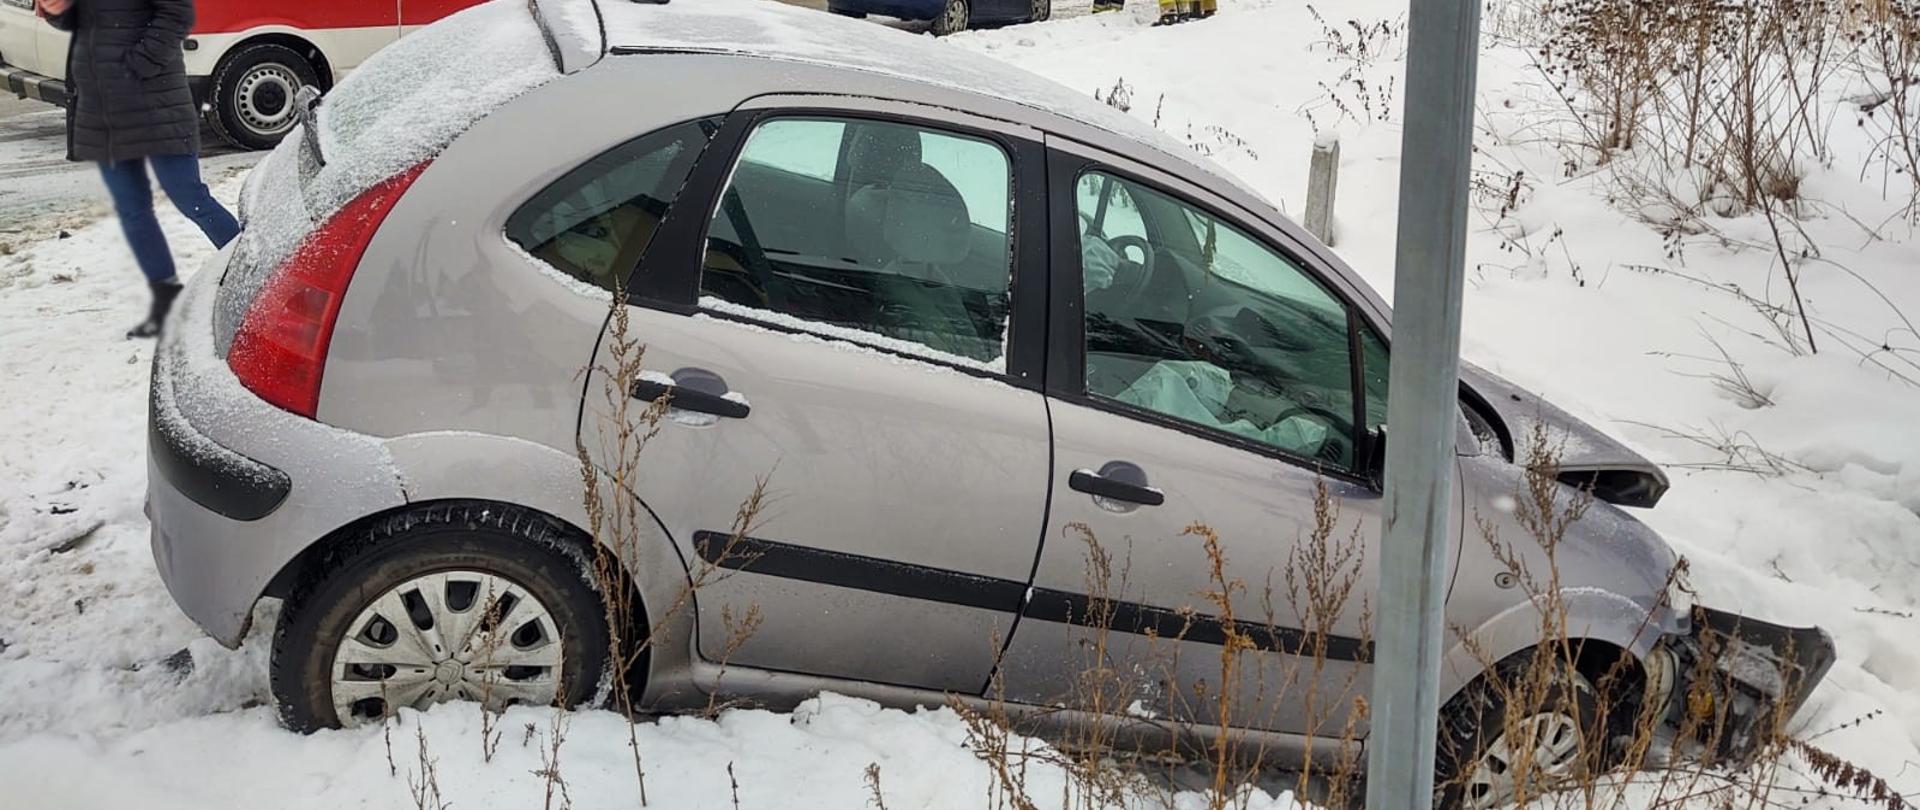 Samochód Citroen z rozbitym przodem poza drogą na śniegu. Obok stoi kobieta. W tle karetka oraz drugi samochód biorący udział w zdarzeniu. Obok drugiego samochodu stoją strażacy.